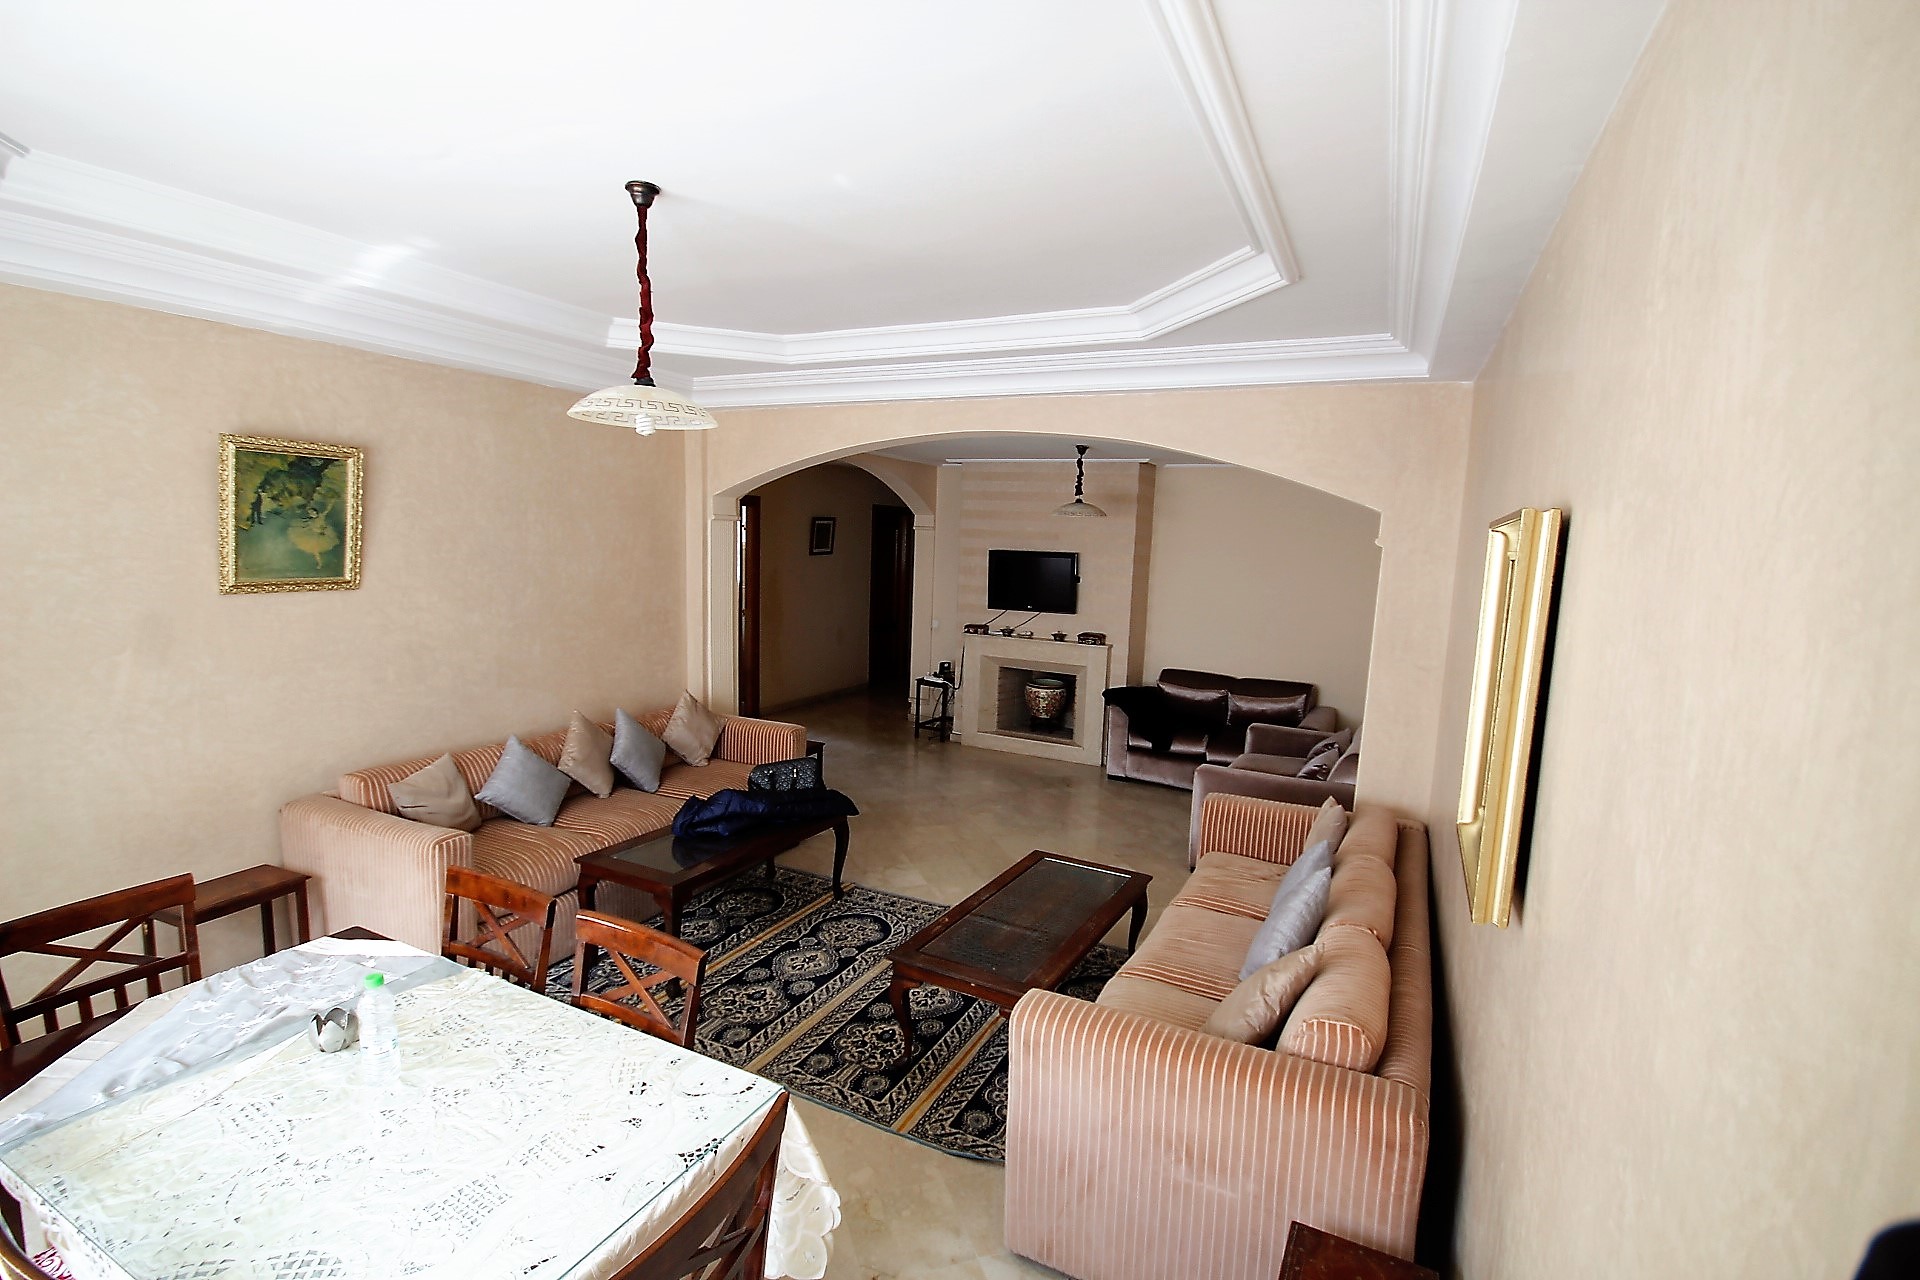 Maroc, Casablanca, Racine sur triangle d’or, à louer Vaste appartement (environ 132 m²) calme meublé de 2 chambres avec petite terrasse